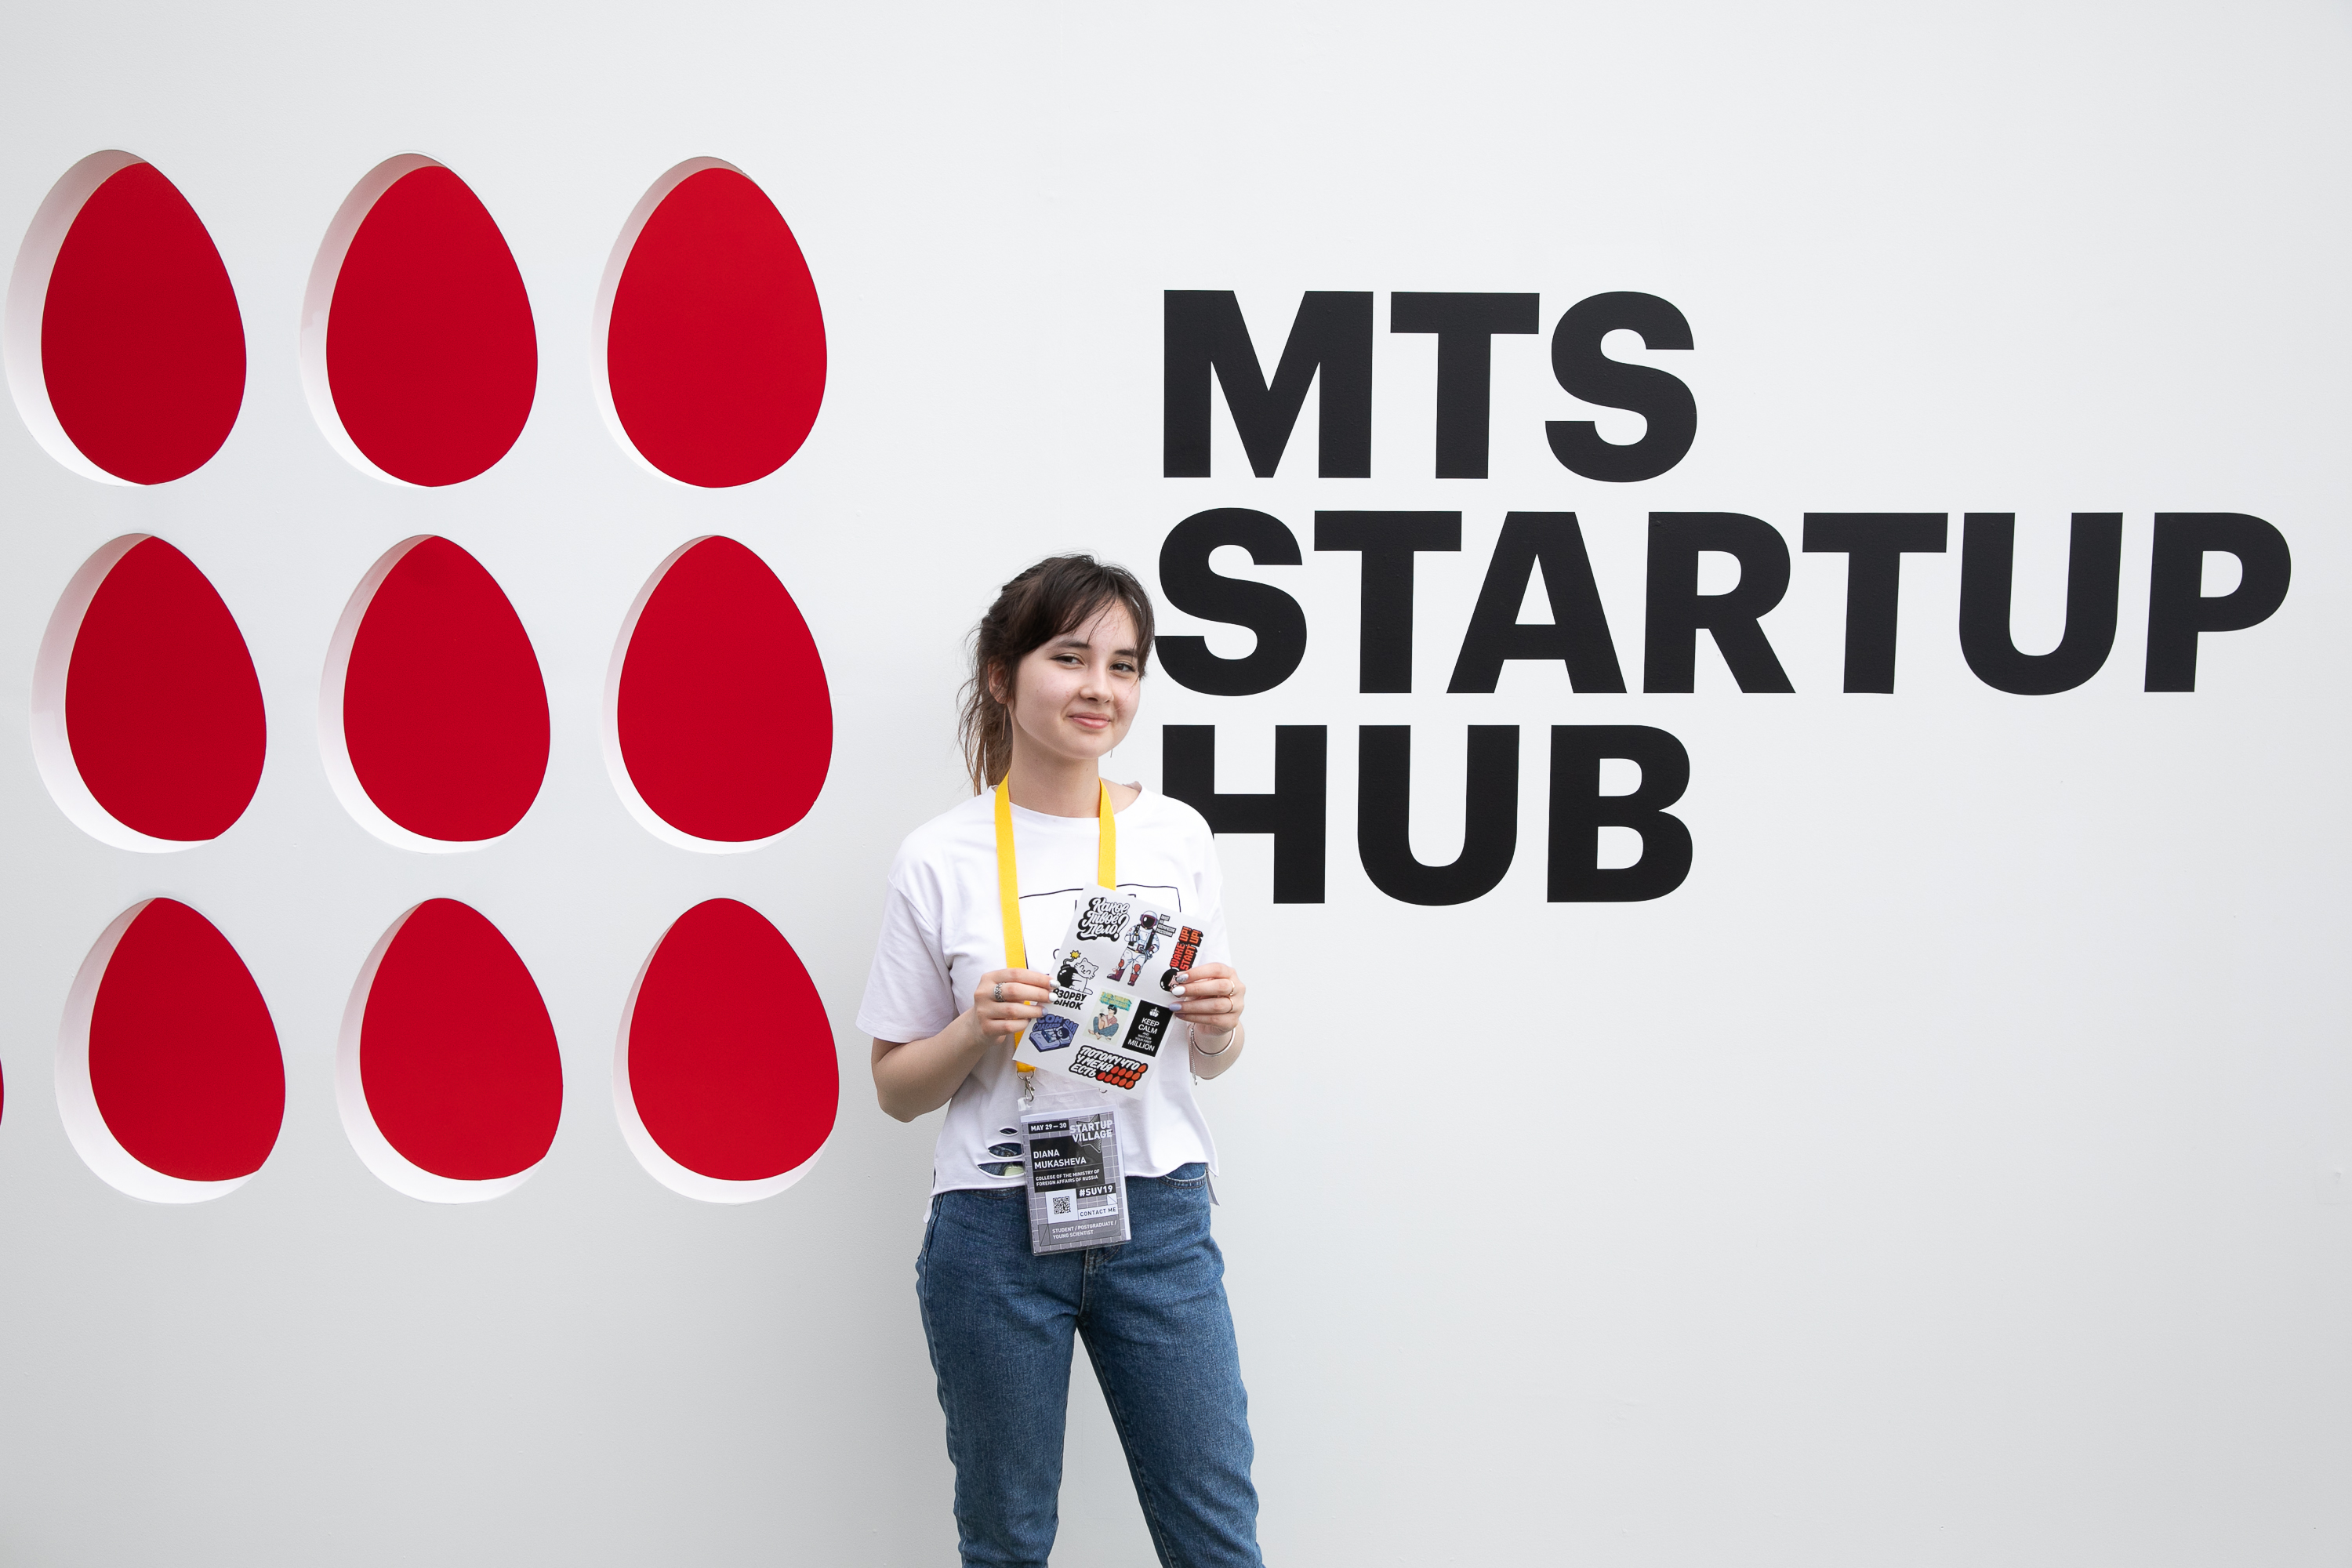 Франшиза bigdata otzyvy review co franshiza bigdata. МТС Startup Hub. MTS Startup Hub лого. МТС инновации. Startup Village лого.